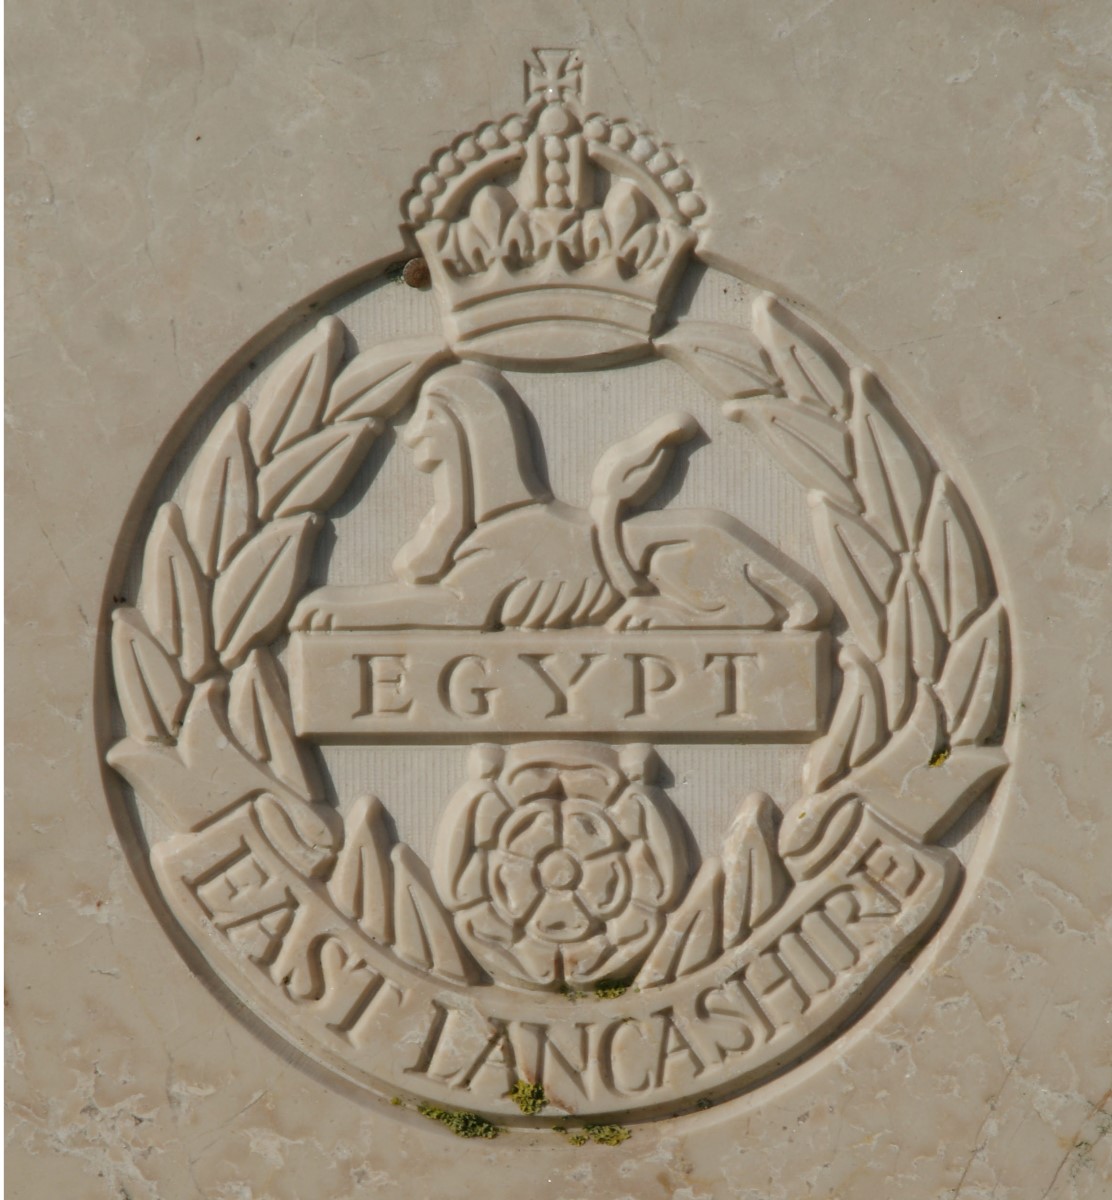 East Lancs badge